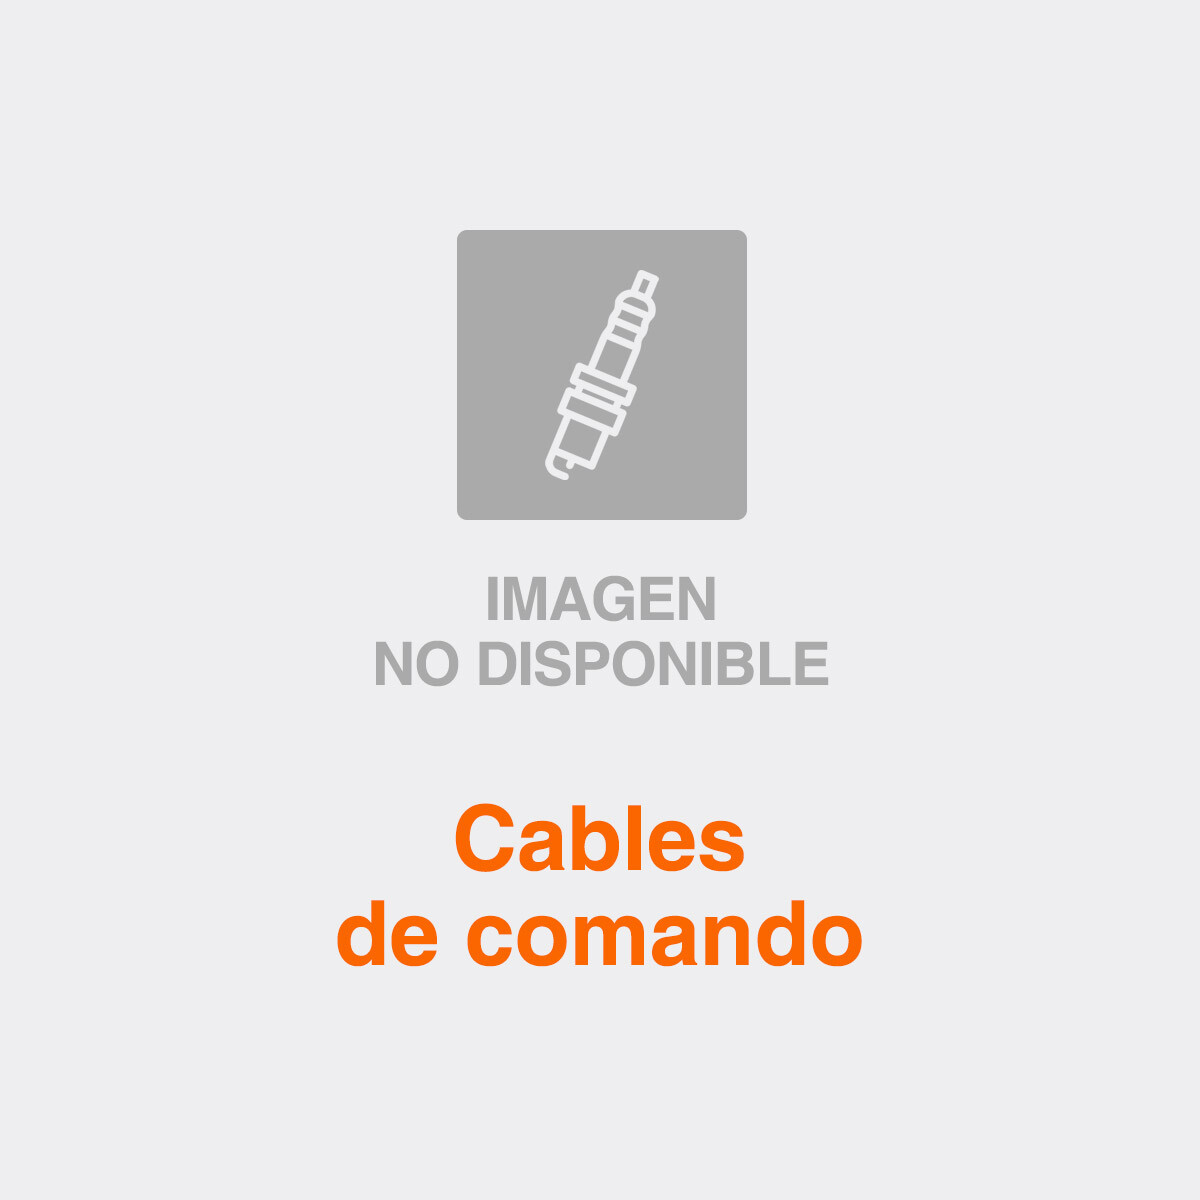 CABLE DE COMANDO GEELY CABLE PUERTA DEL.DER. - 